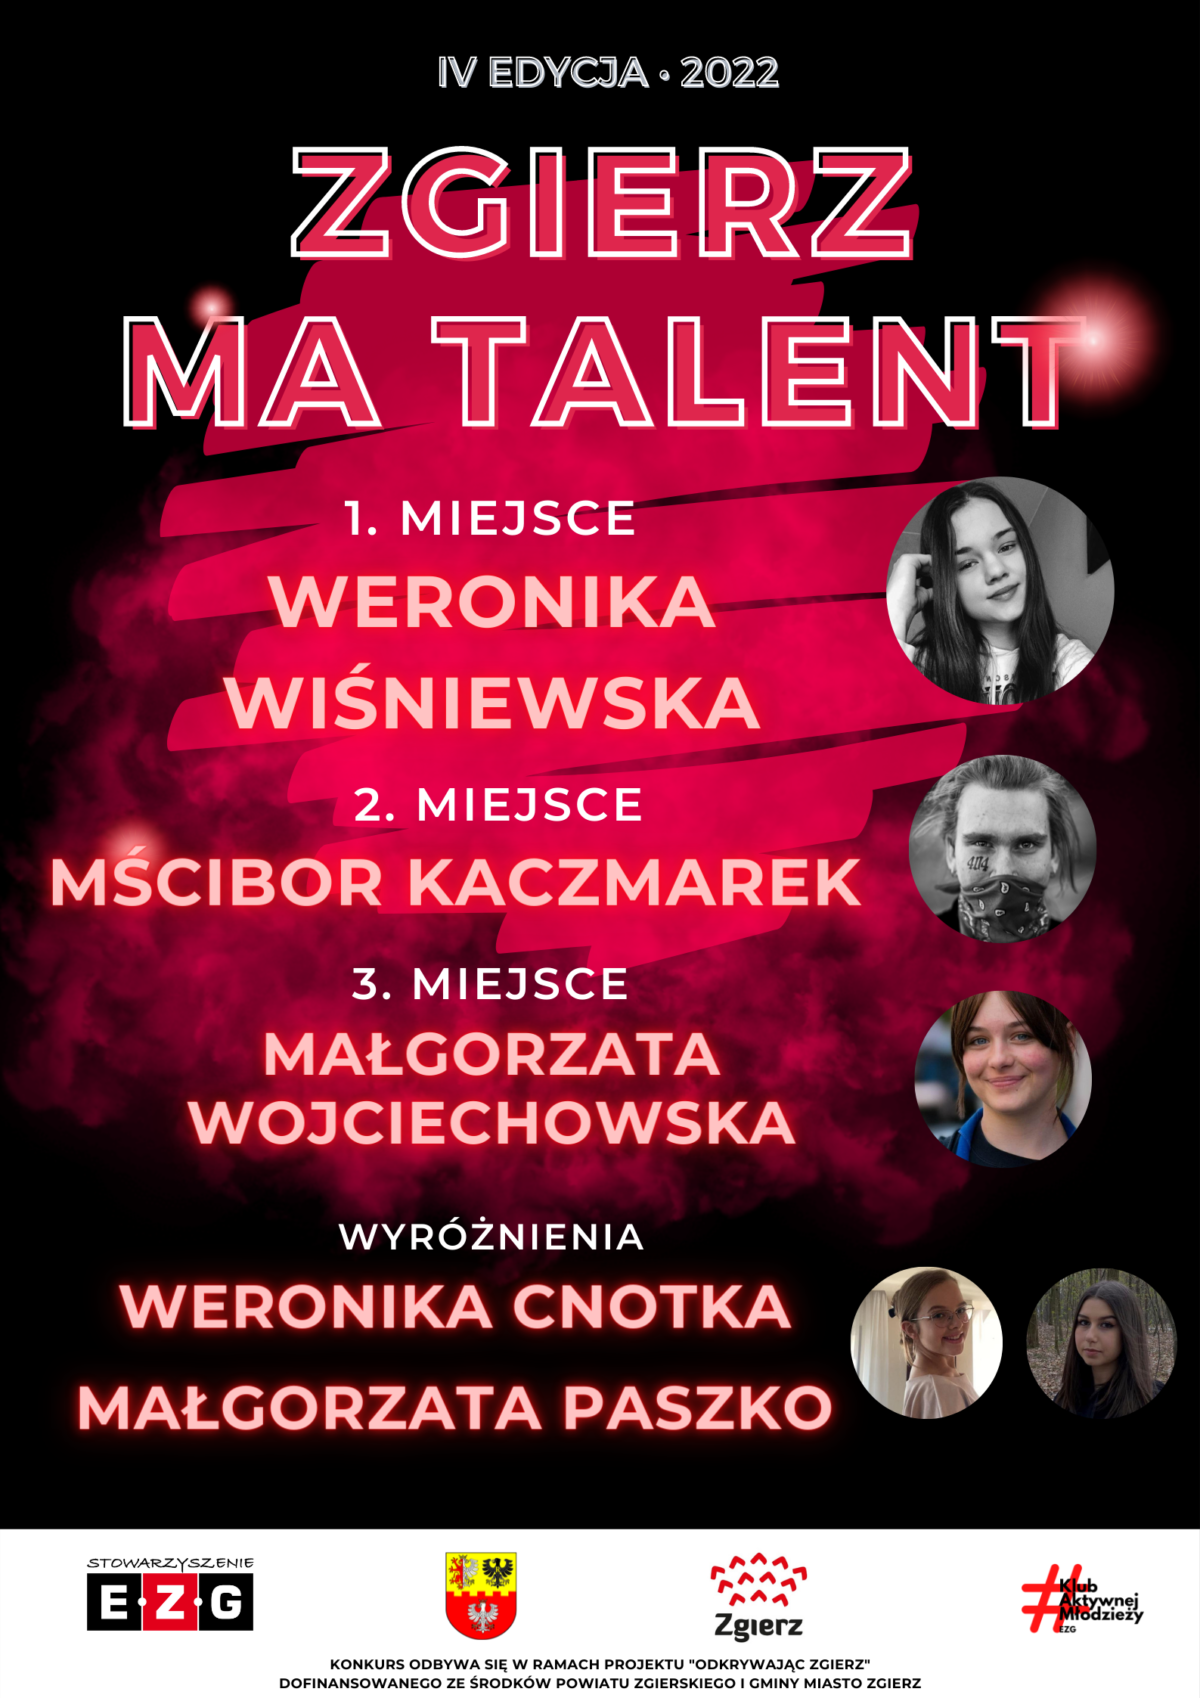 Wyniki Zgierz Ma Talent 2022!